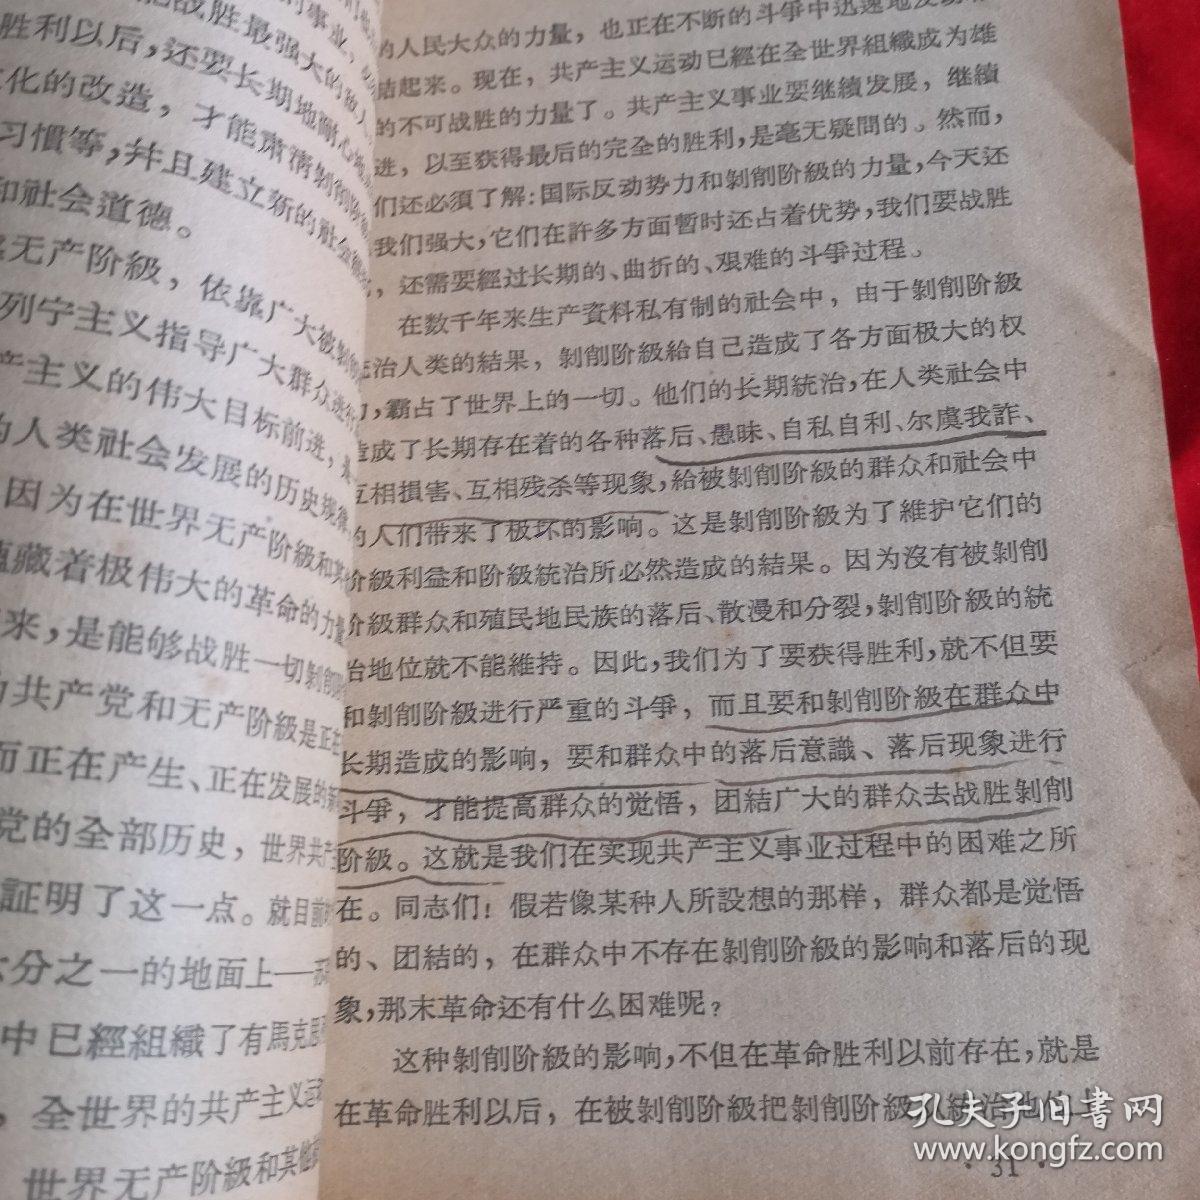 刘少论共产党员的修养 ——1949年版 有签名，如图所示